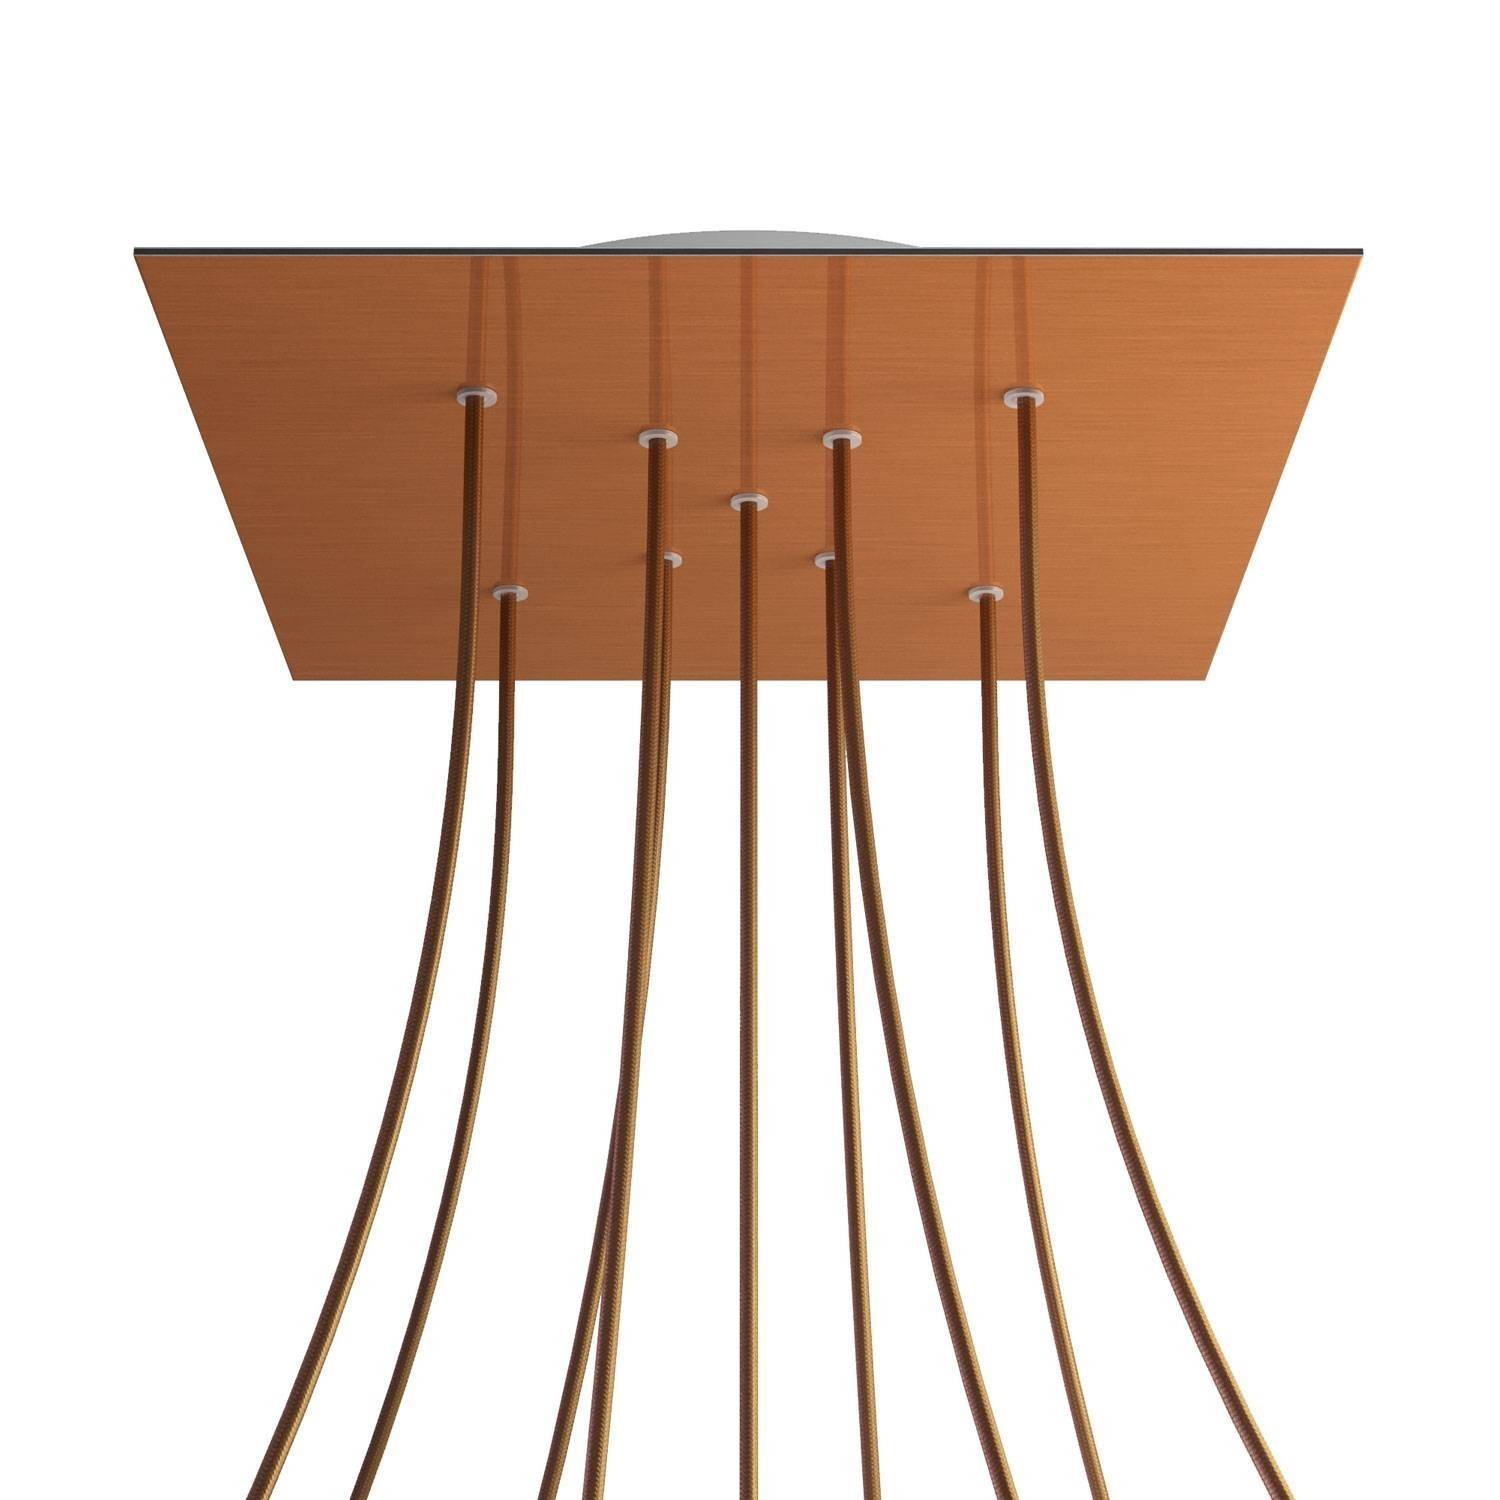 Čtvercový stropní baldachýn Rose-One System s délkou hrany 400 mm a 9 otvory s rozmístěním ve tvaru X a 4 boční otvory